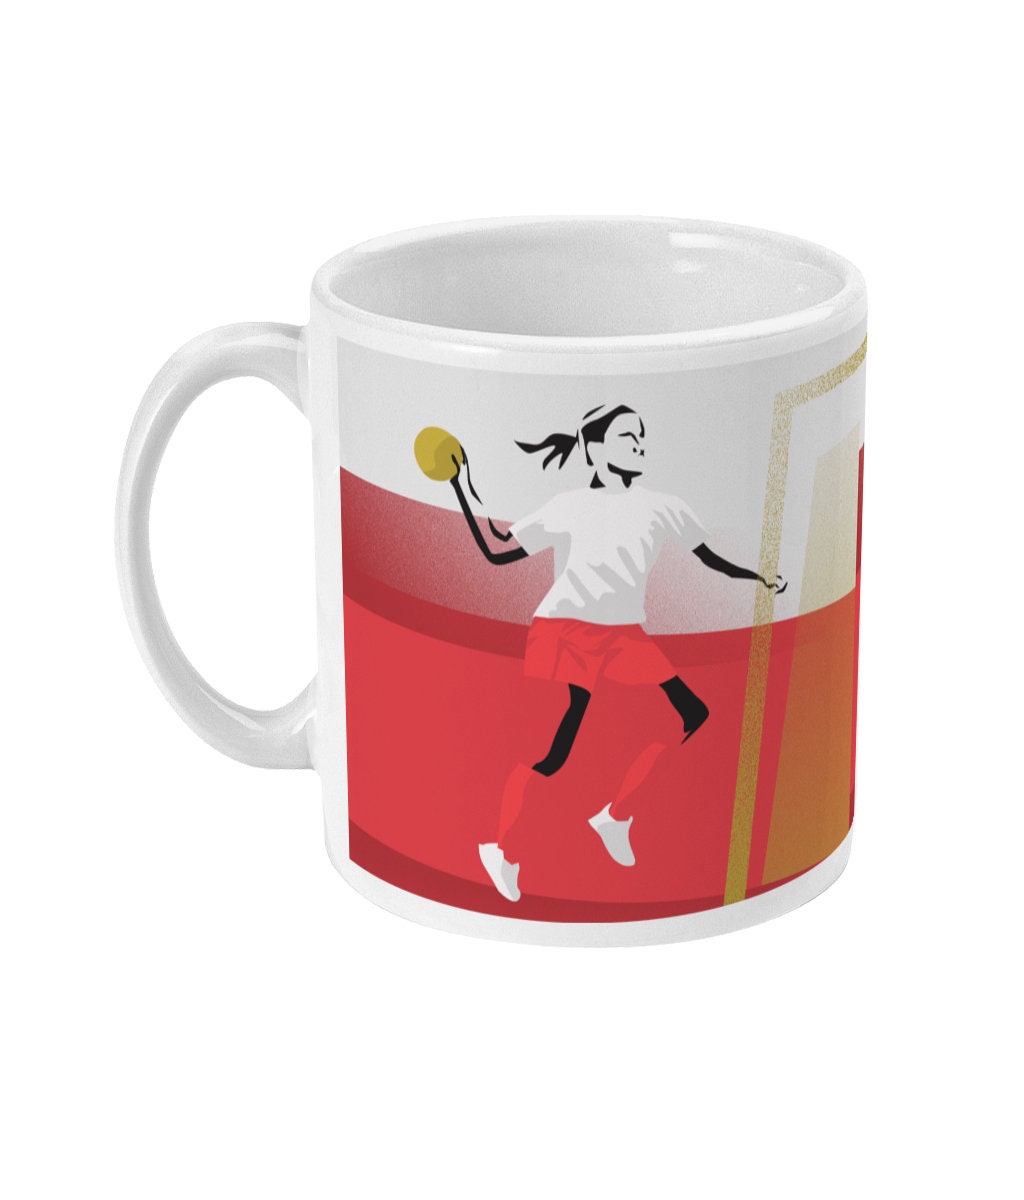 Handball cup or mug "La Handballeuse" - Customizable